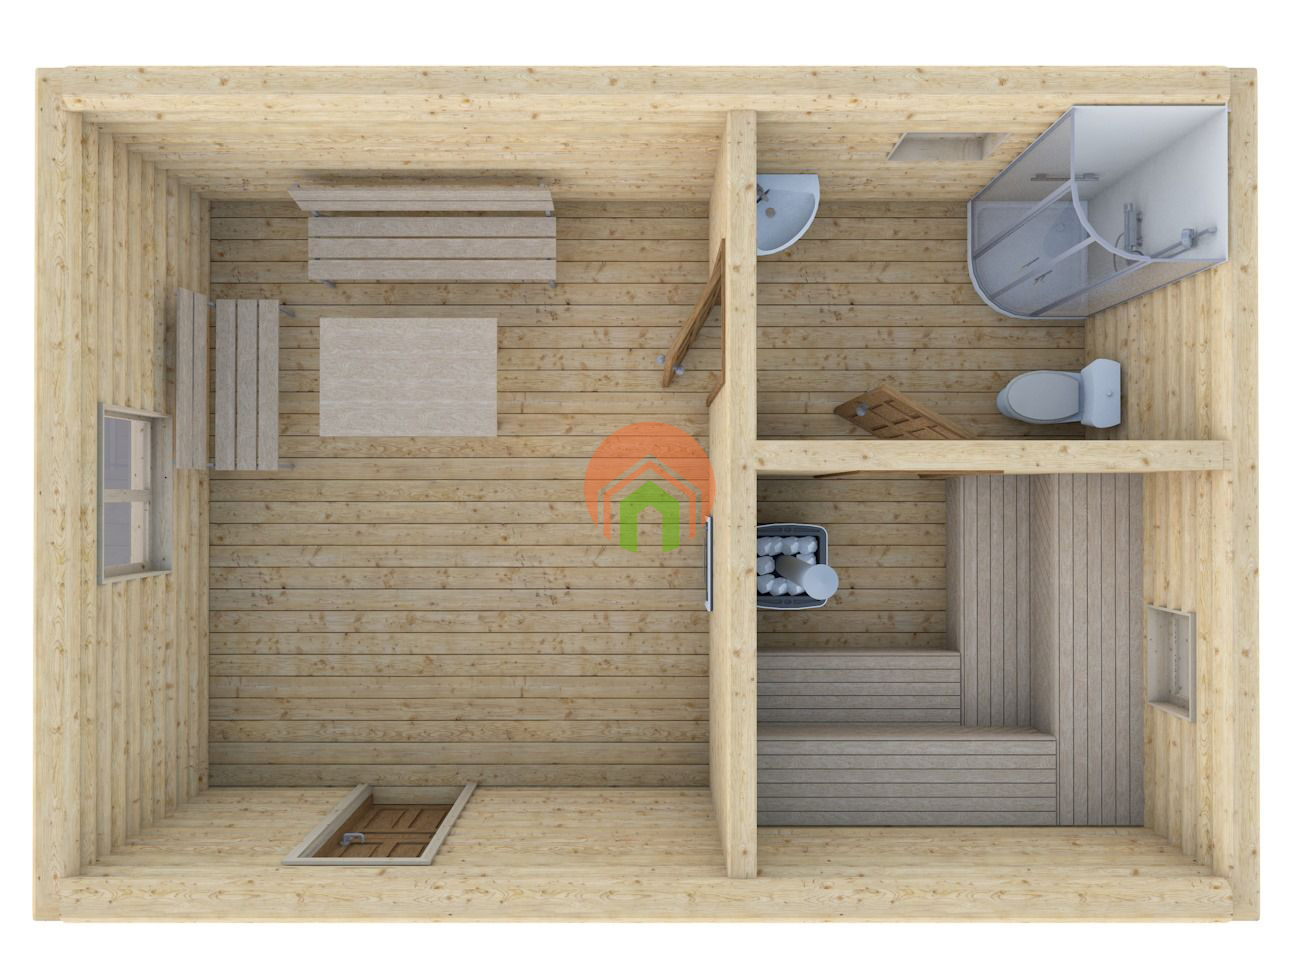 Баня размером 4х4: планировка (22 фото) мойка и парилка отдельно на 4 человек, план конструкции из бревна